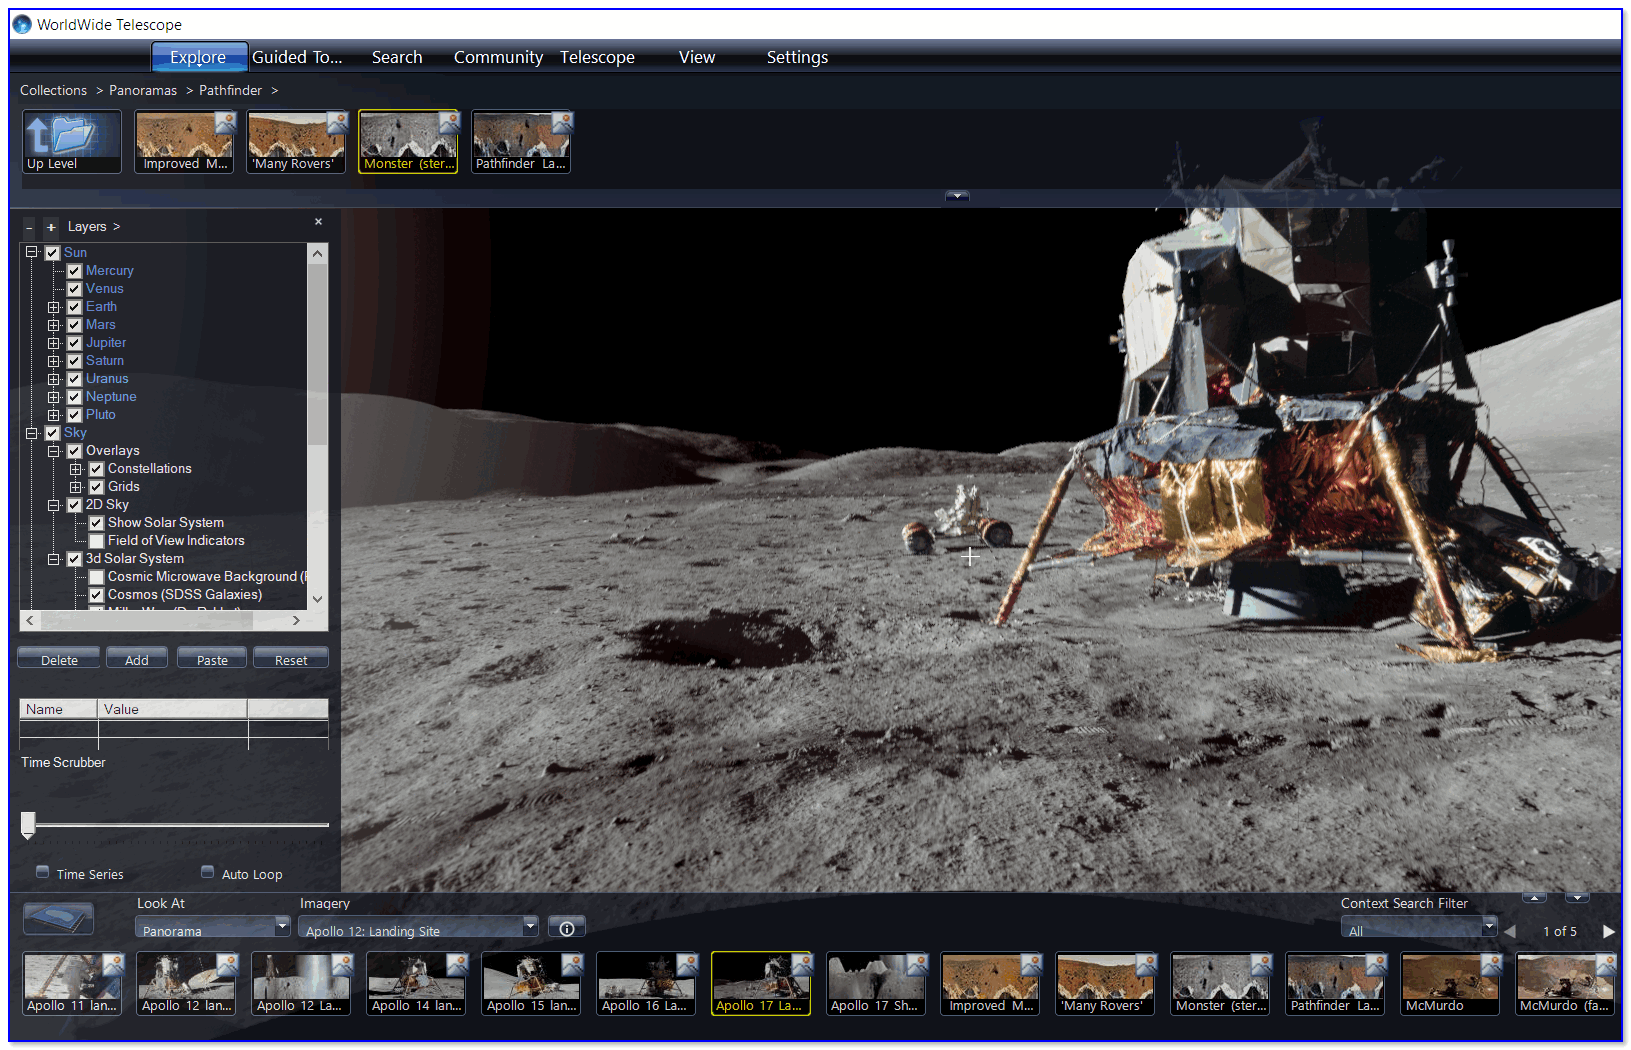 Снимки с миссии Аполлон